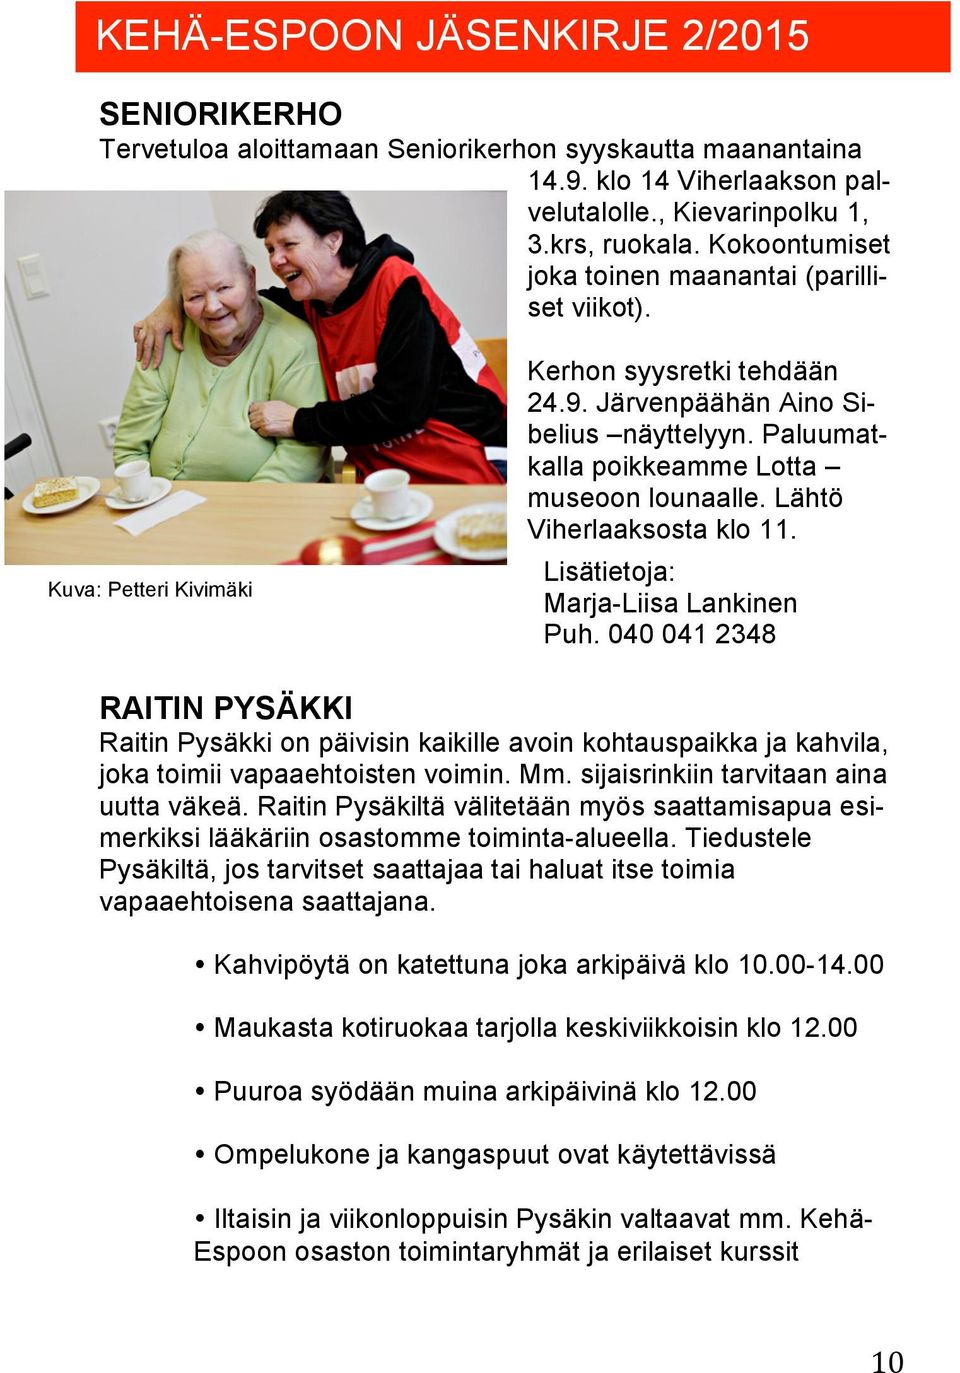 Lähtö Viherlaaksosta klo 11. Lisätietoja: Marja-Liisa Lankinen Puh. 040 041 2348 RAITIN PYSÄKKI Raitin Pysäkki on päivisin kaikille avoin kohtauspaikka ja kahvila, joka toimii vapaaehtoisten voimin.